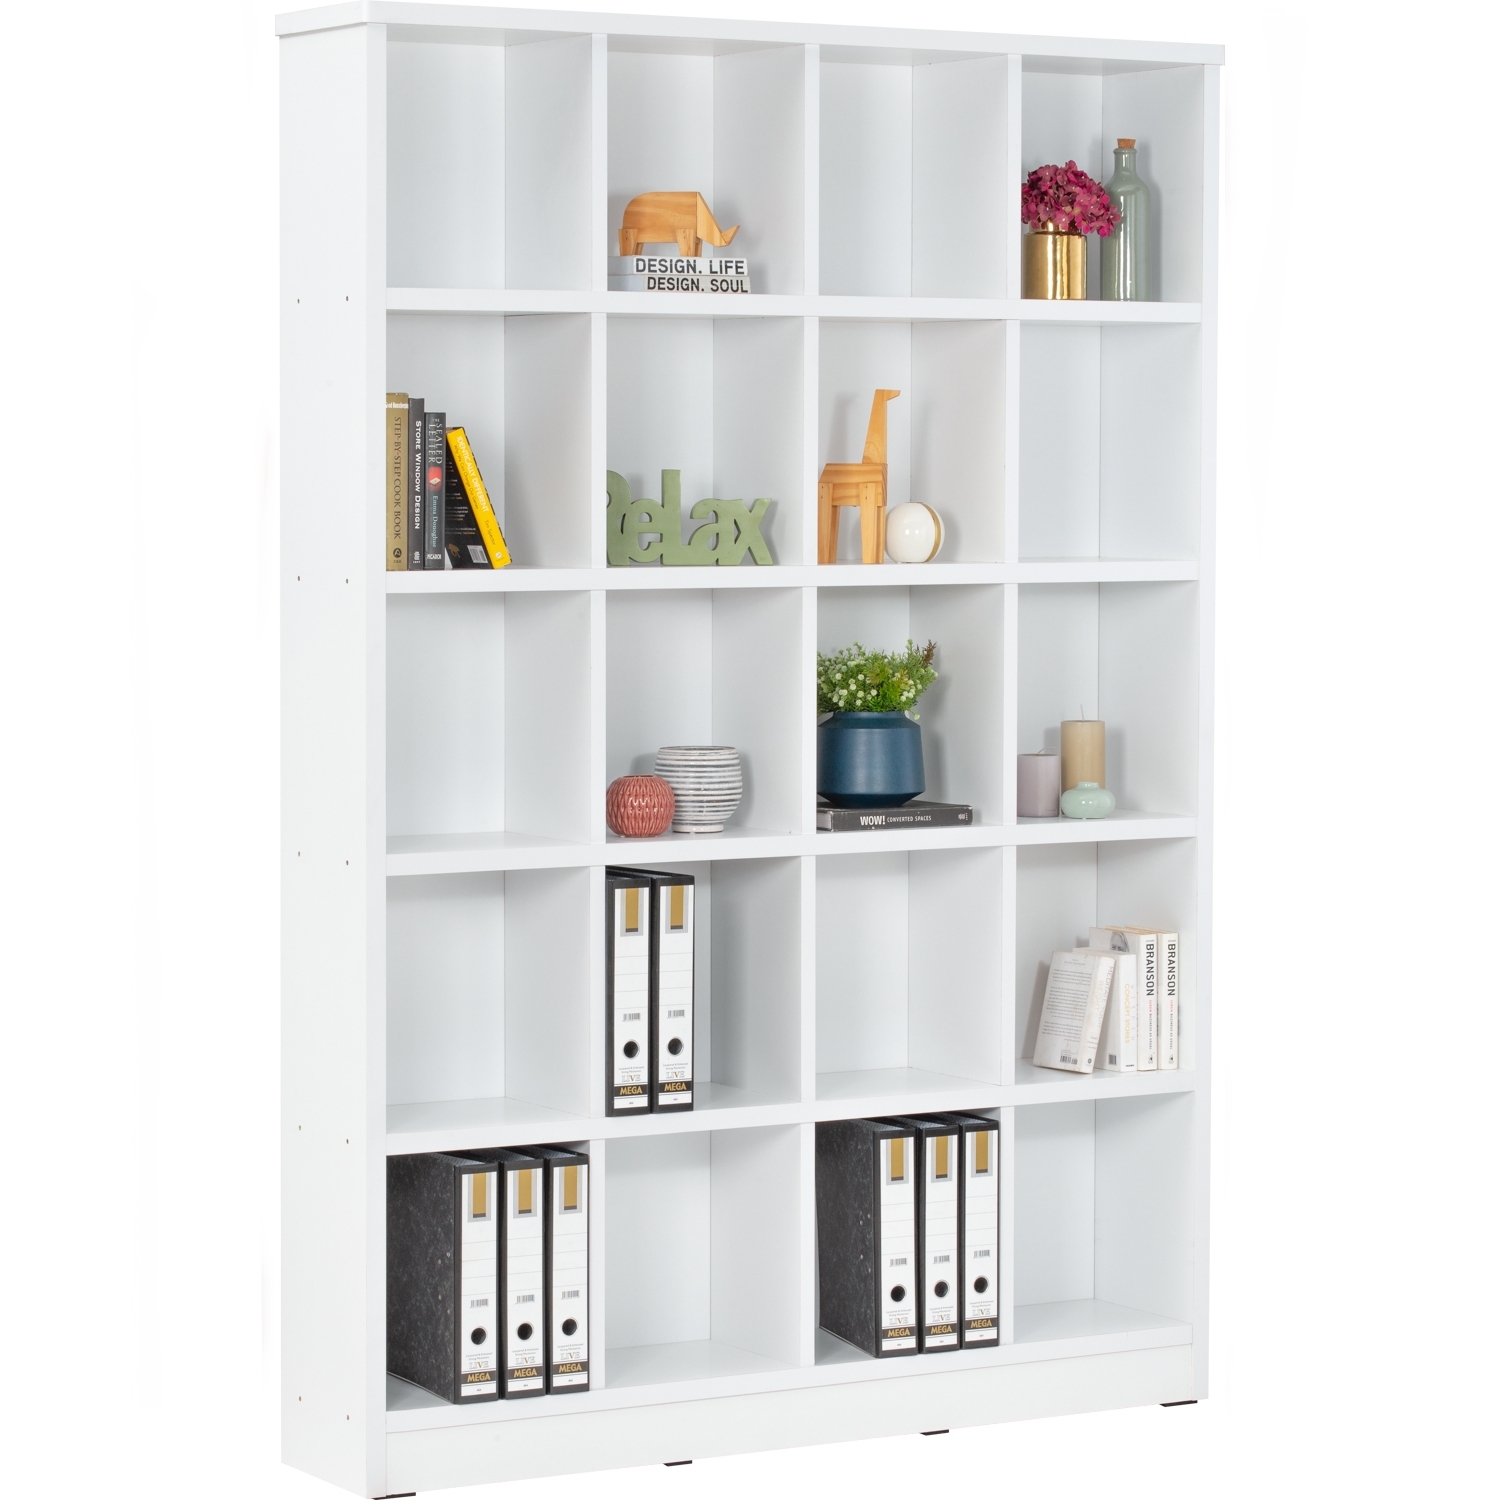 AIMIZON Ievor 20 compartment file cabinet in White colour